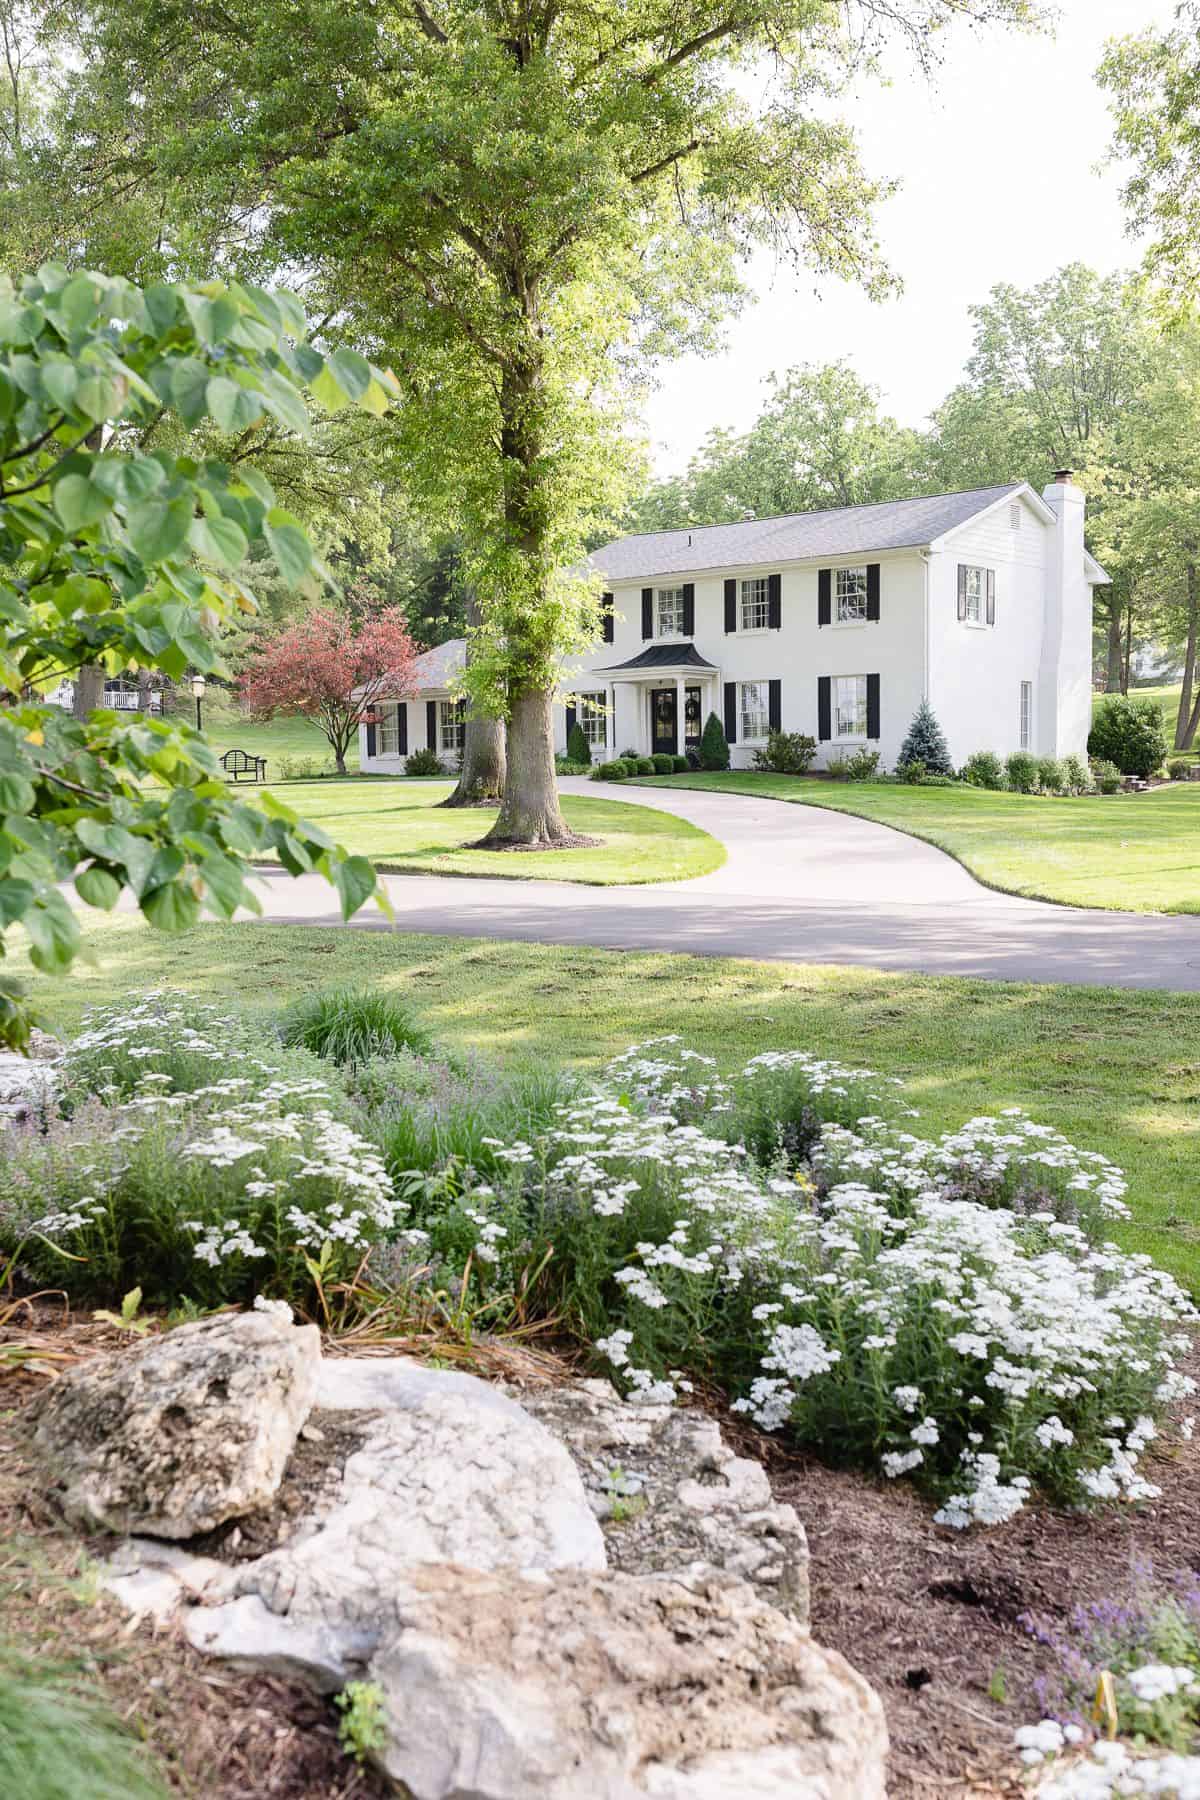 一座白砖房坐落在绿树和鲜花之间。